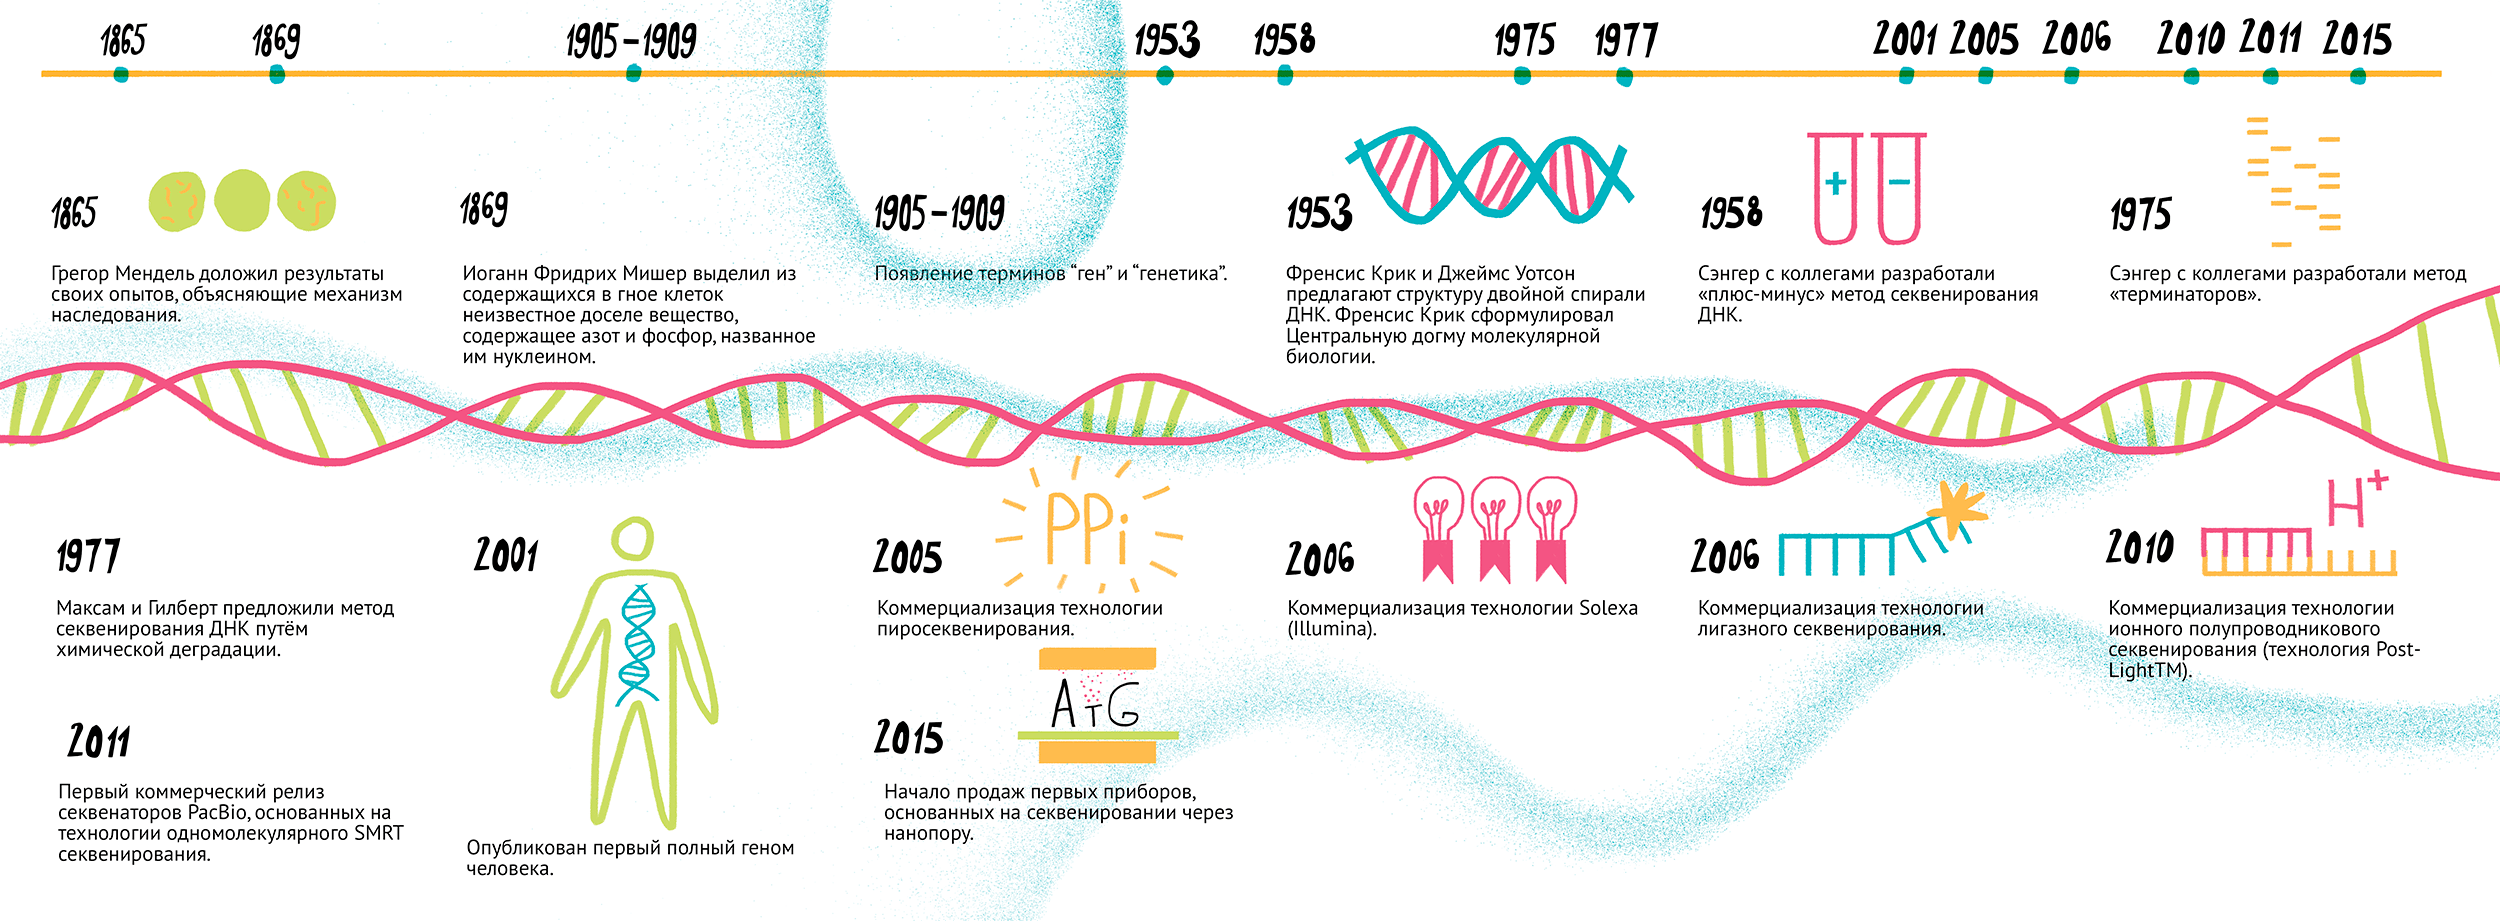 История геномных исследований